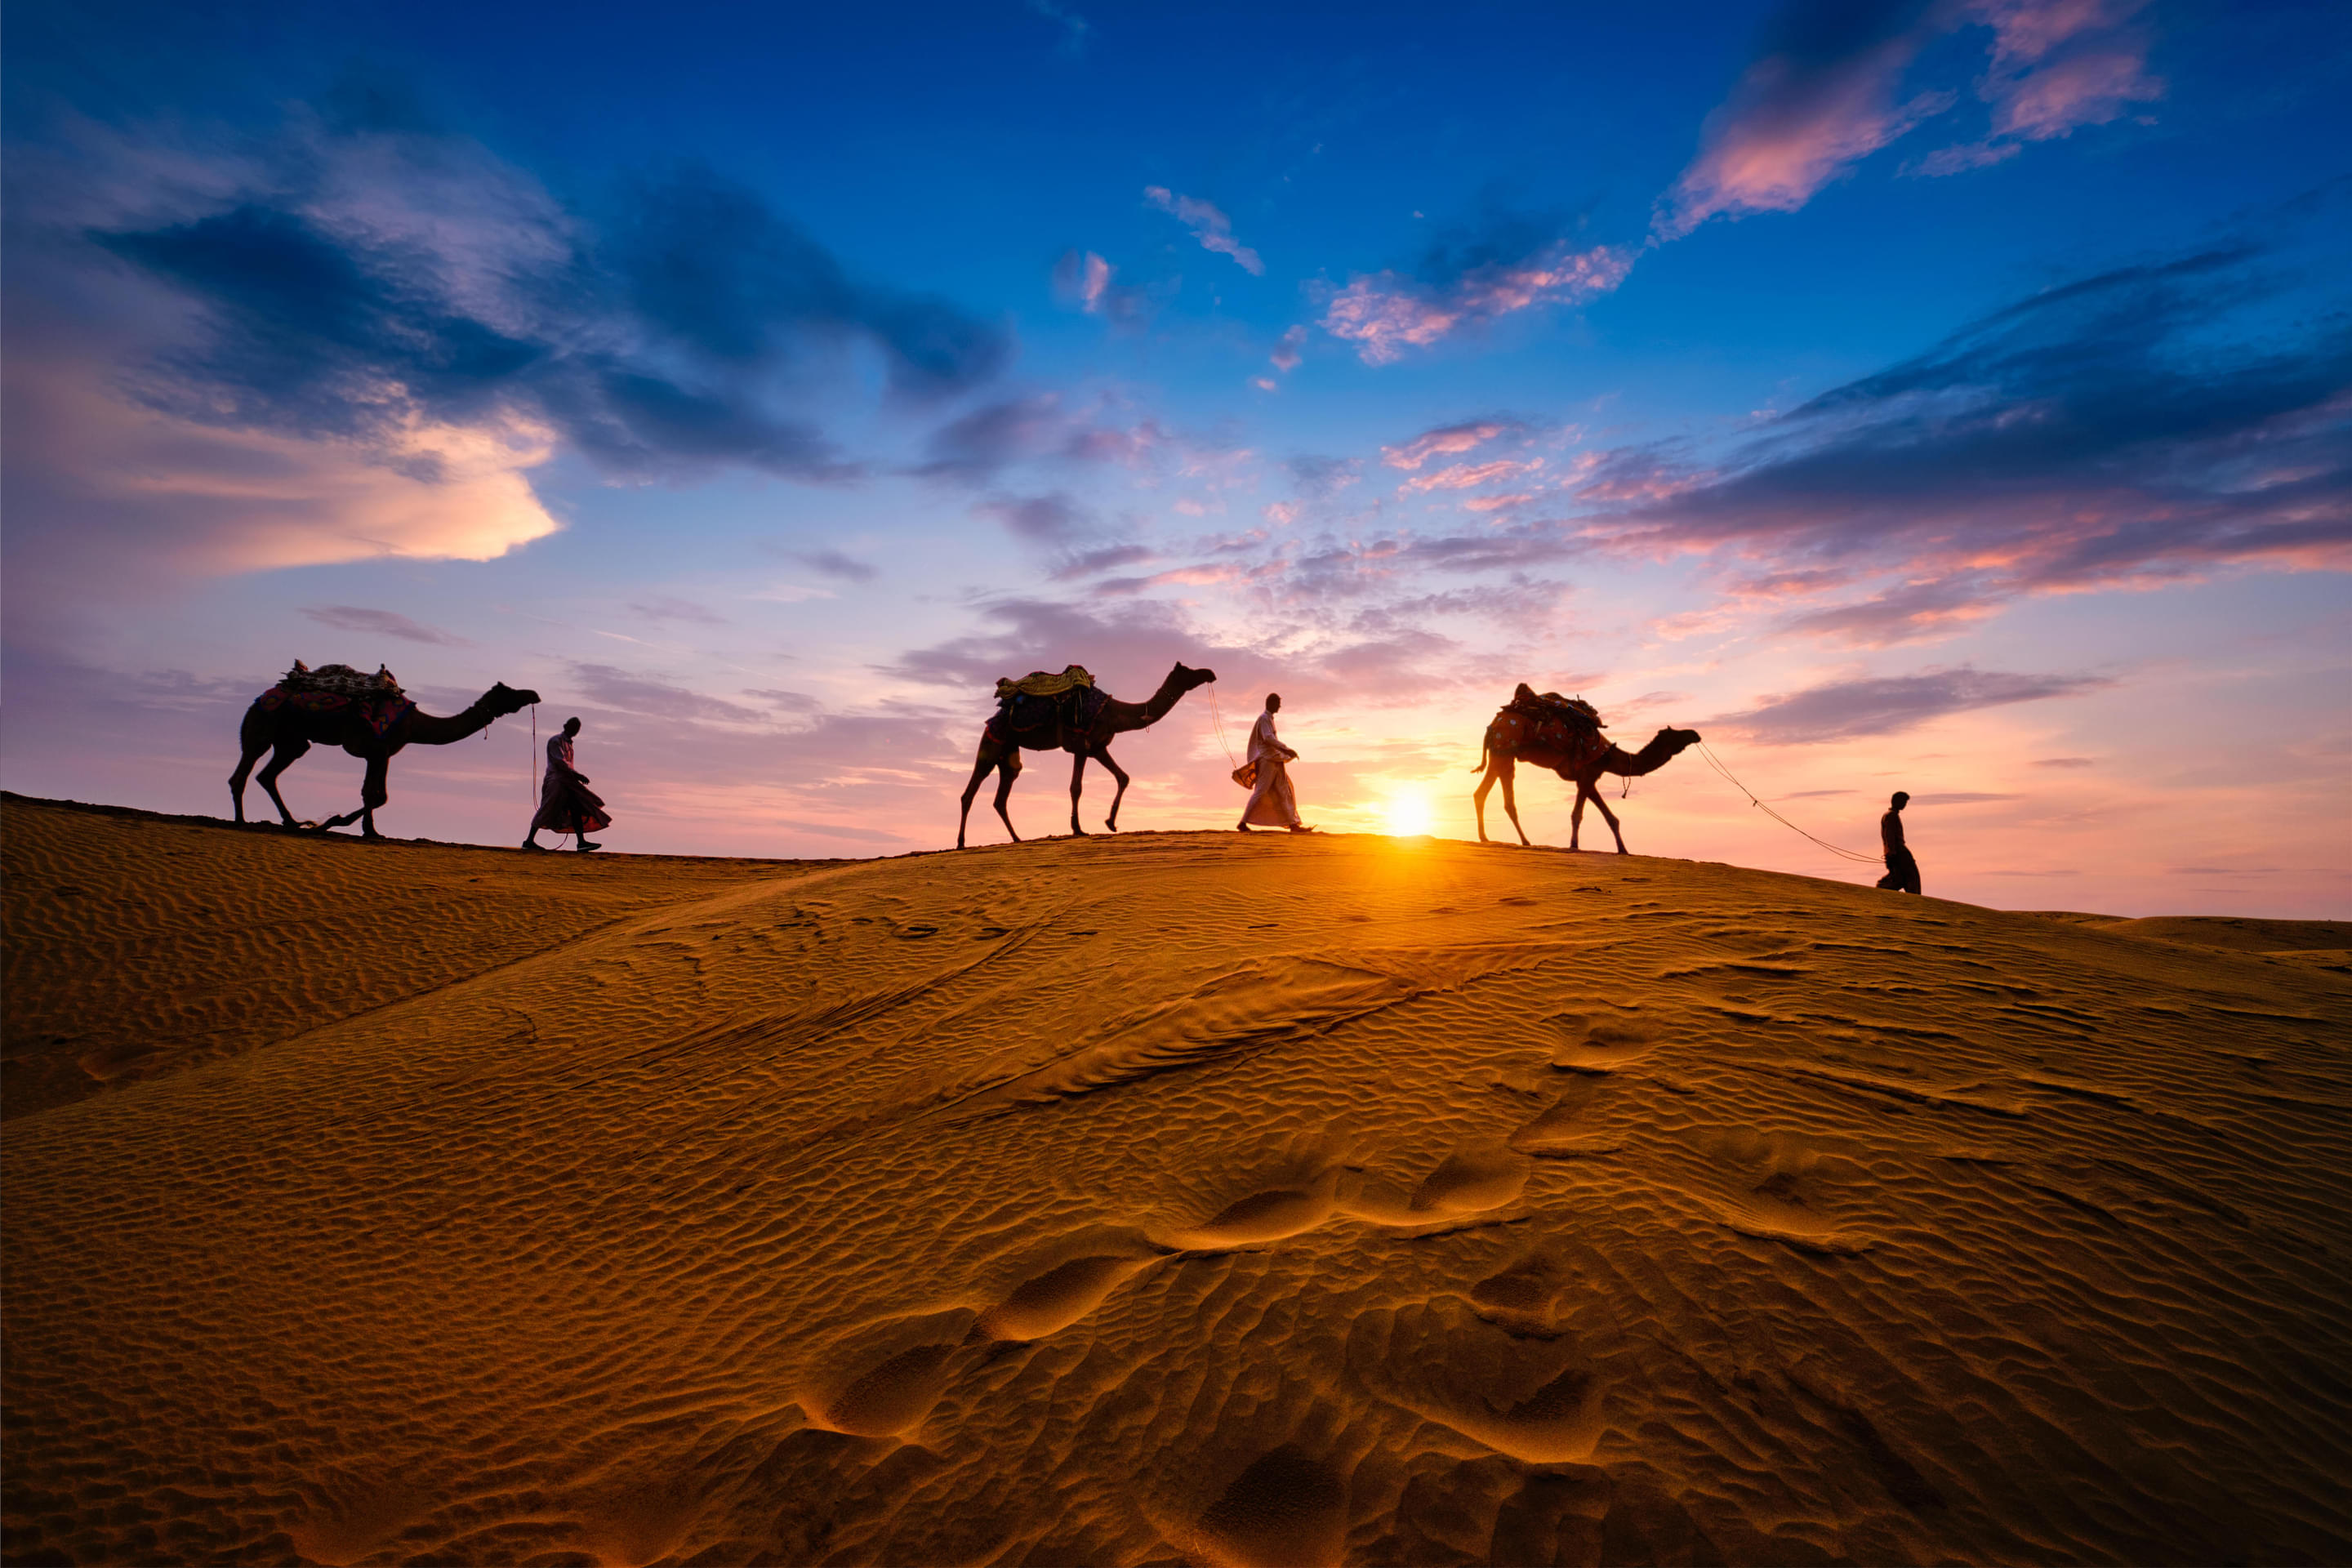 Desert Camel Safari in Jaisalmer